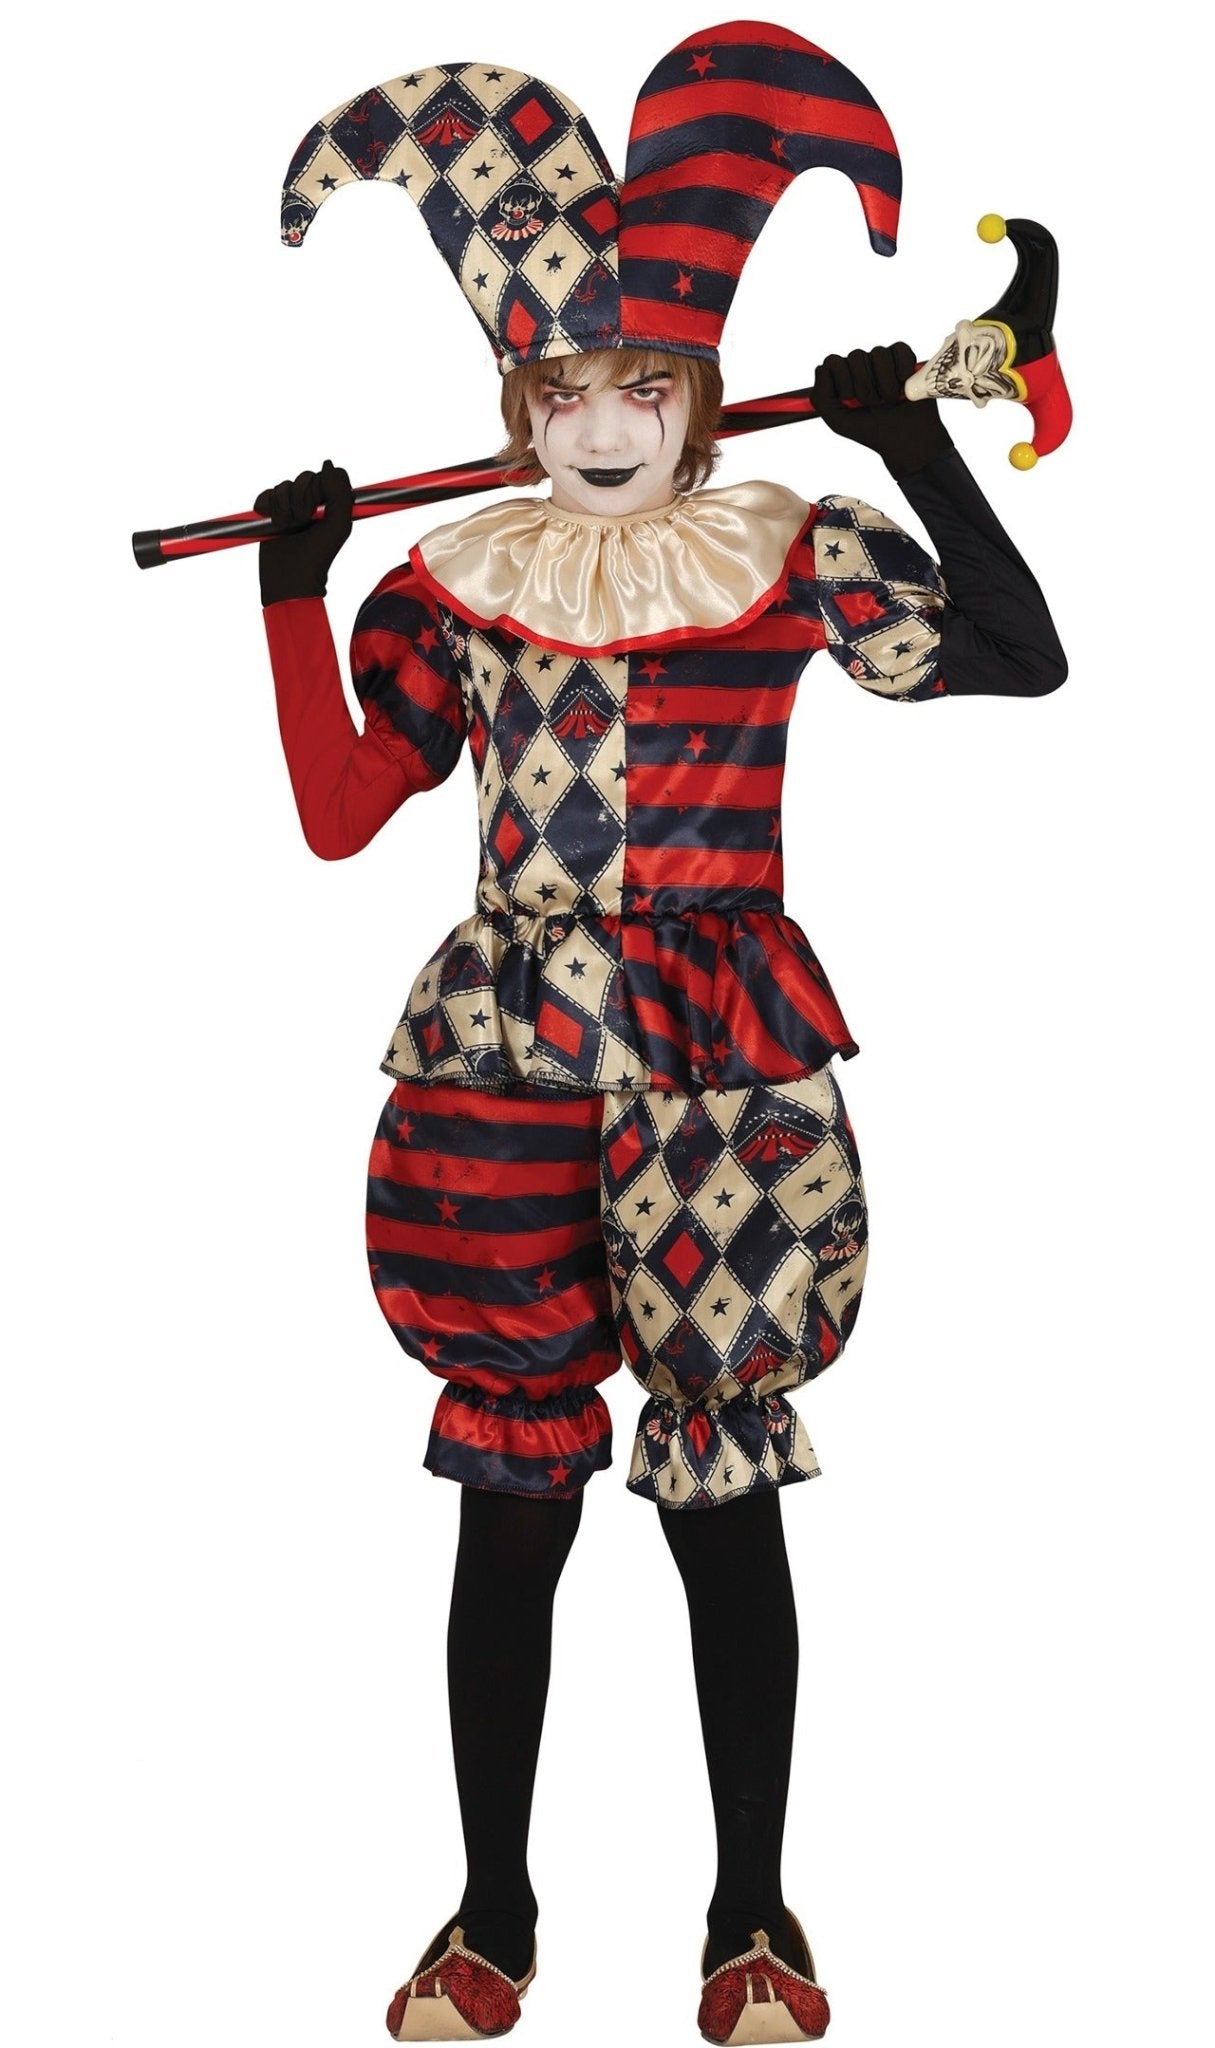 Déguisement pour garçon Clown jester arlequin cirque costume carnaval enfant